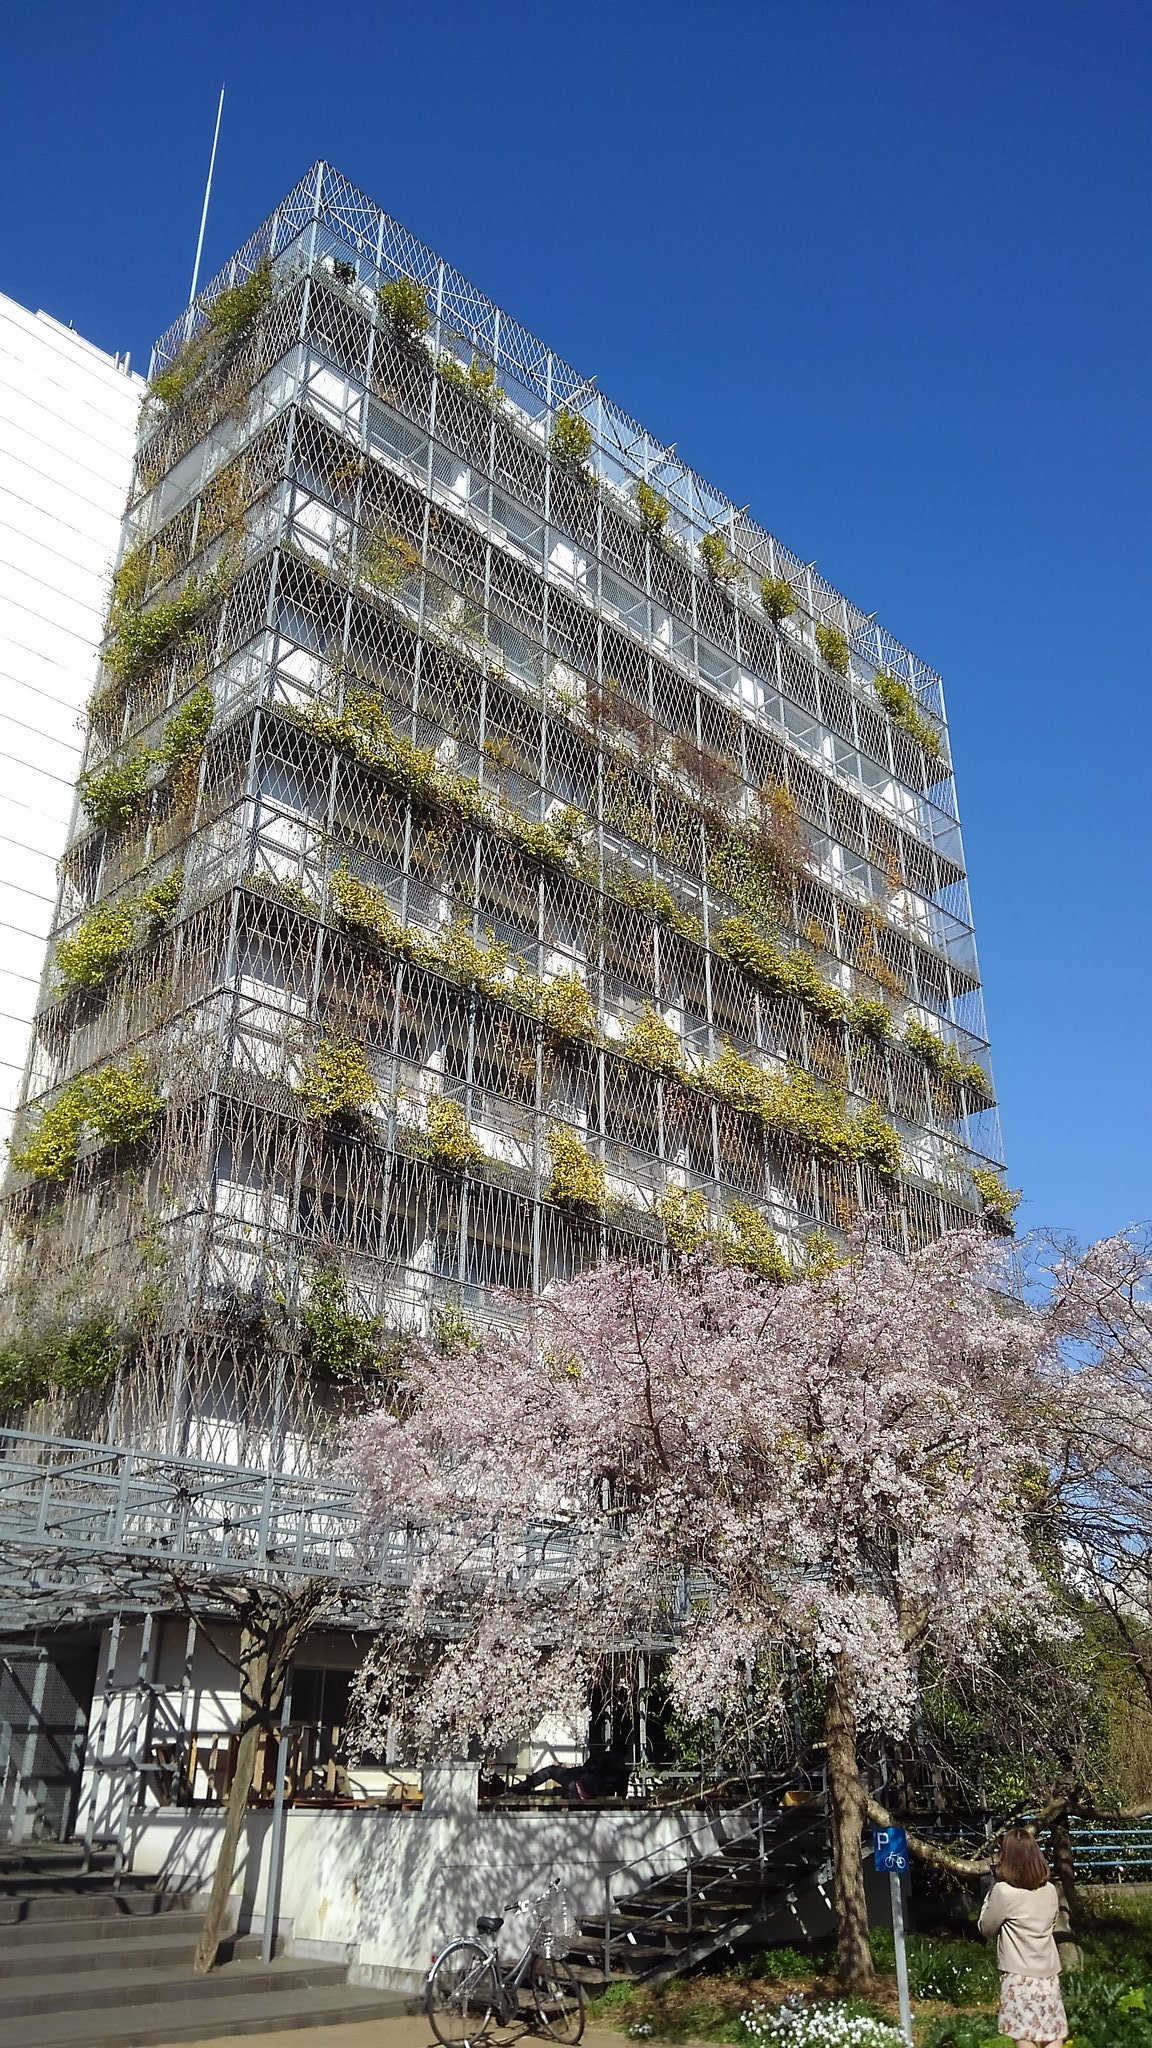 Qun 横浜国立大学の春 野音の桜が咲いている こんなにキャンパス綺麗だったっけ ここで妻と過ごした時から25年もの時間が経っている